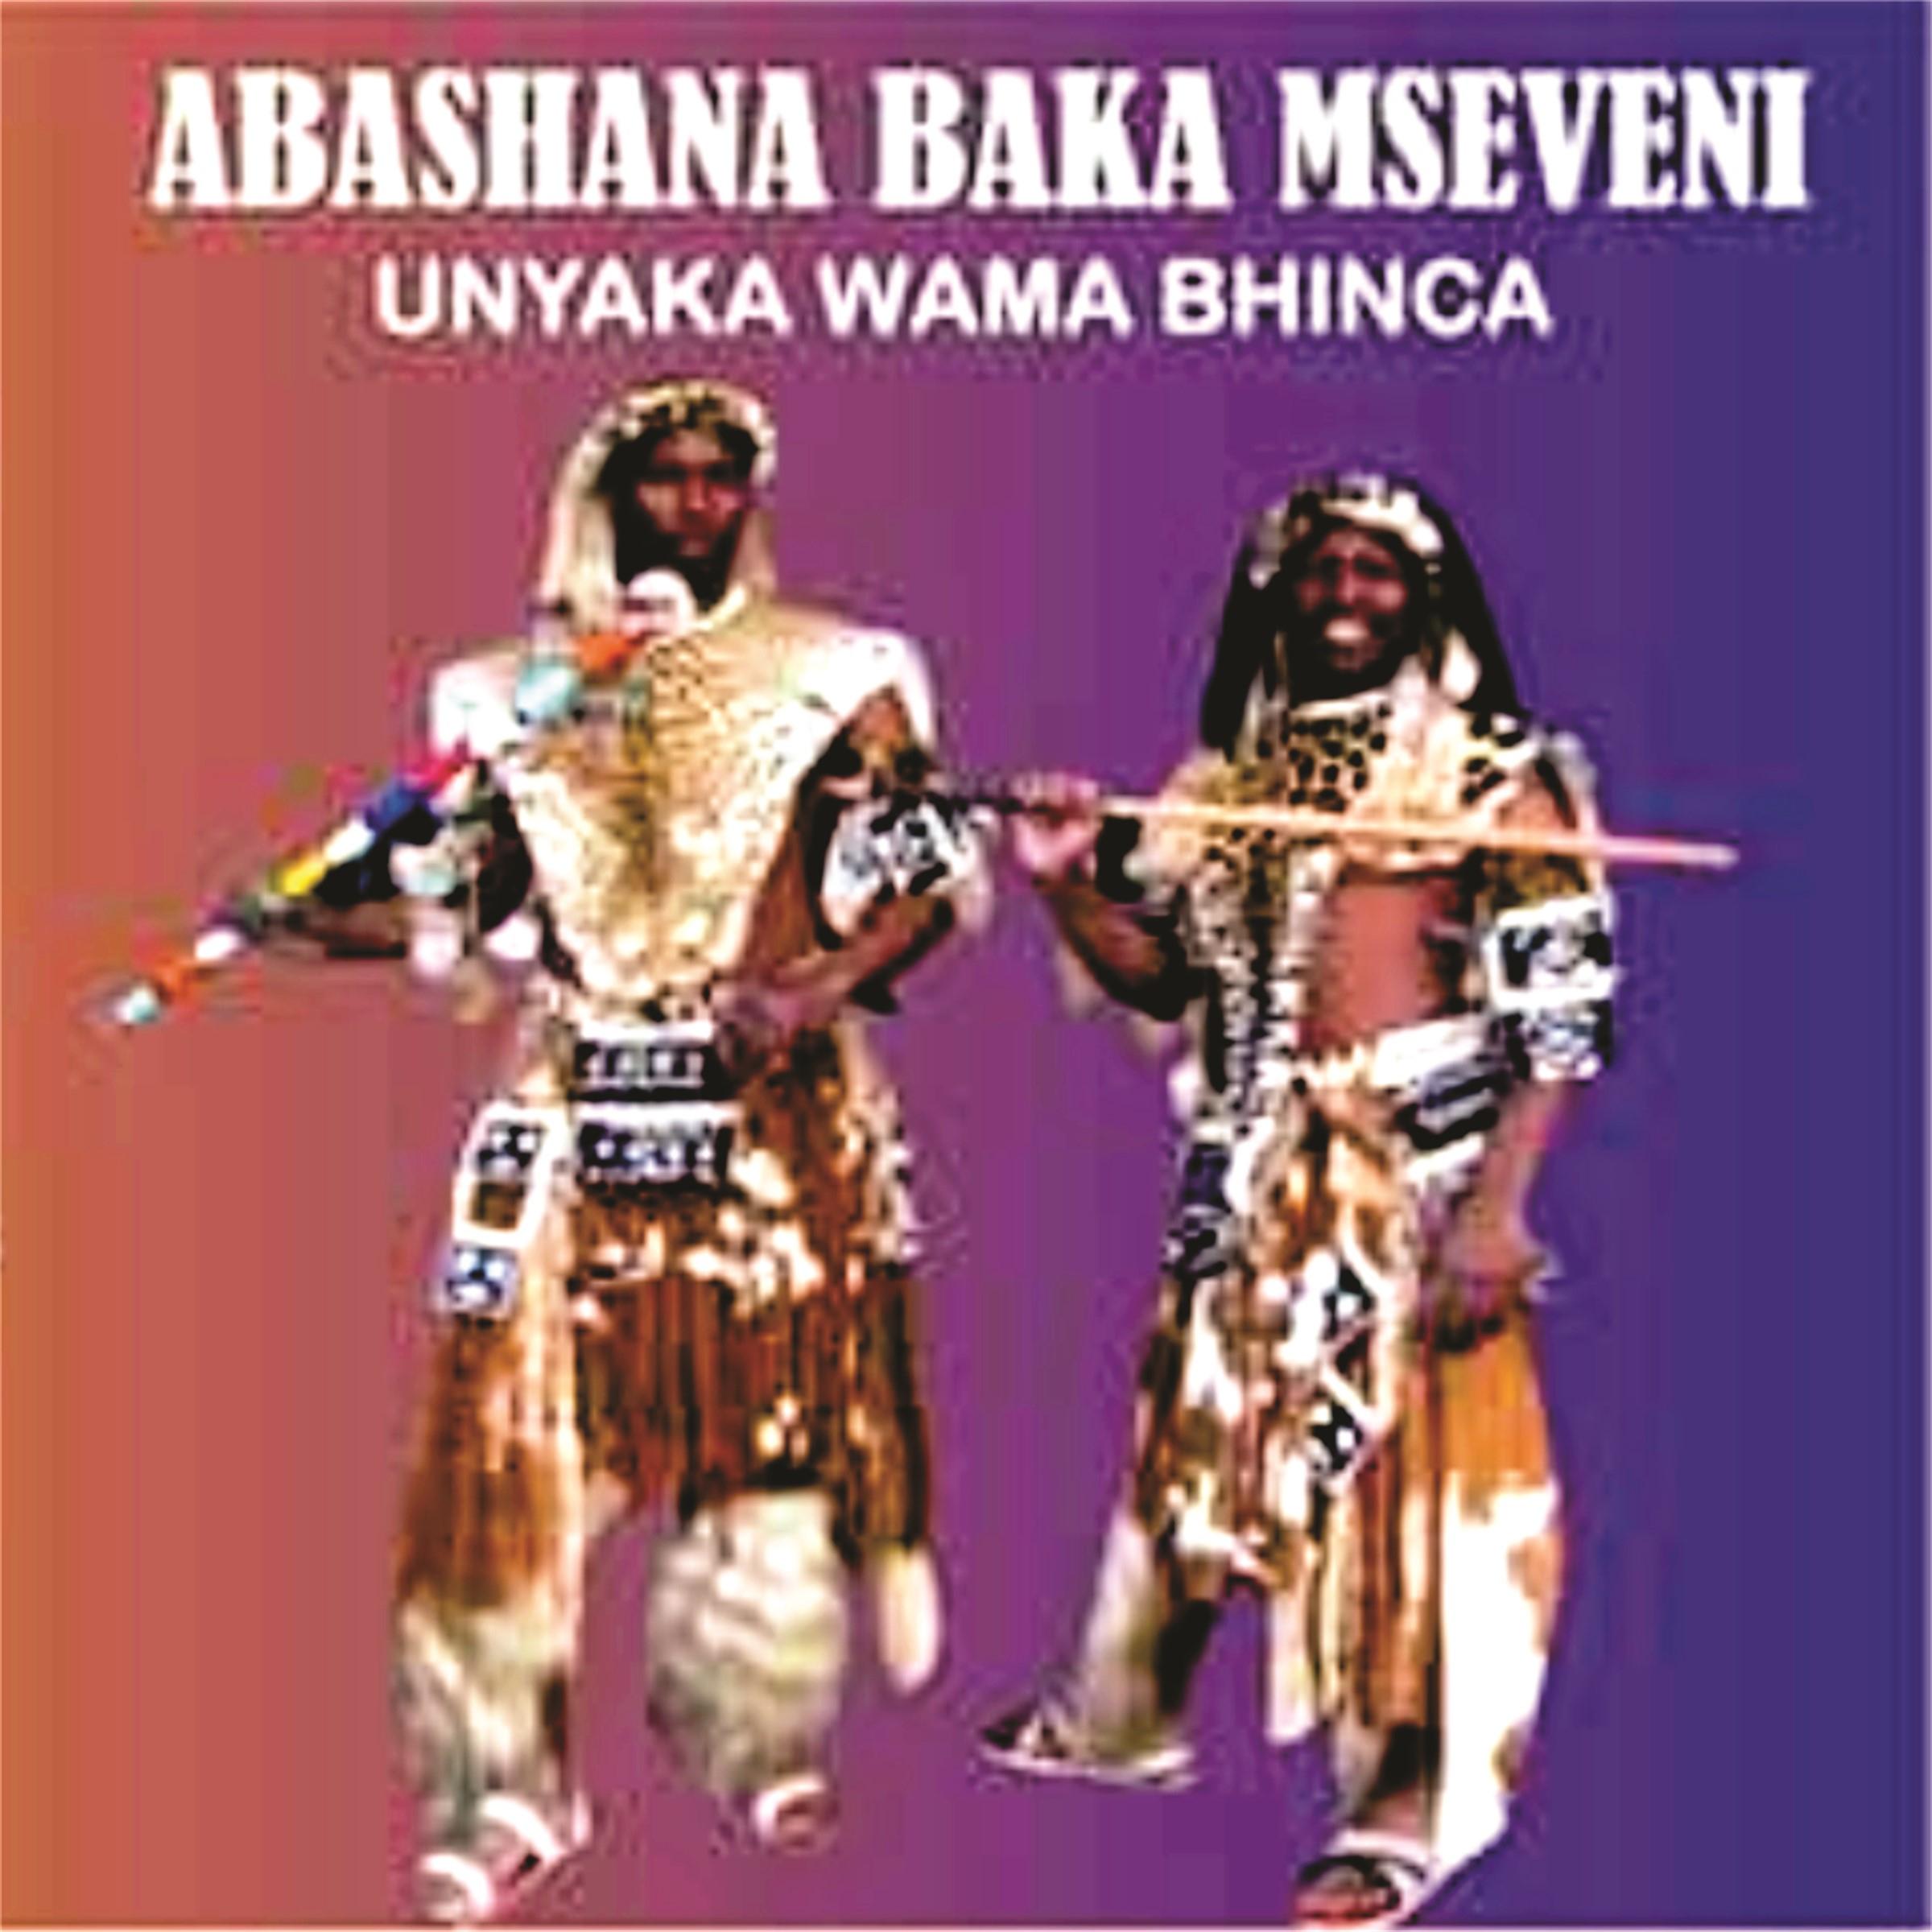 Unyaka Wama bhinca